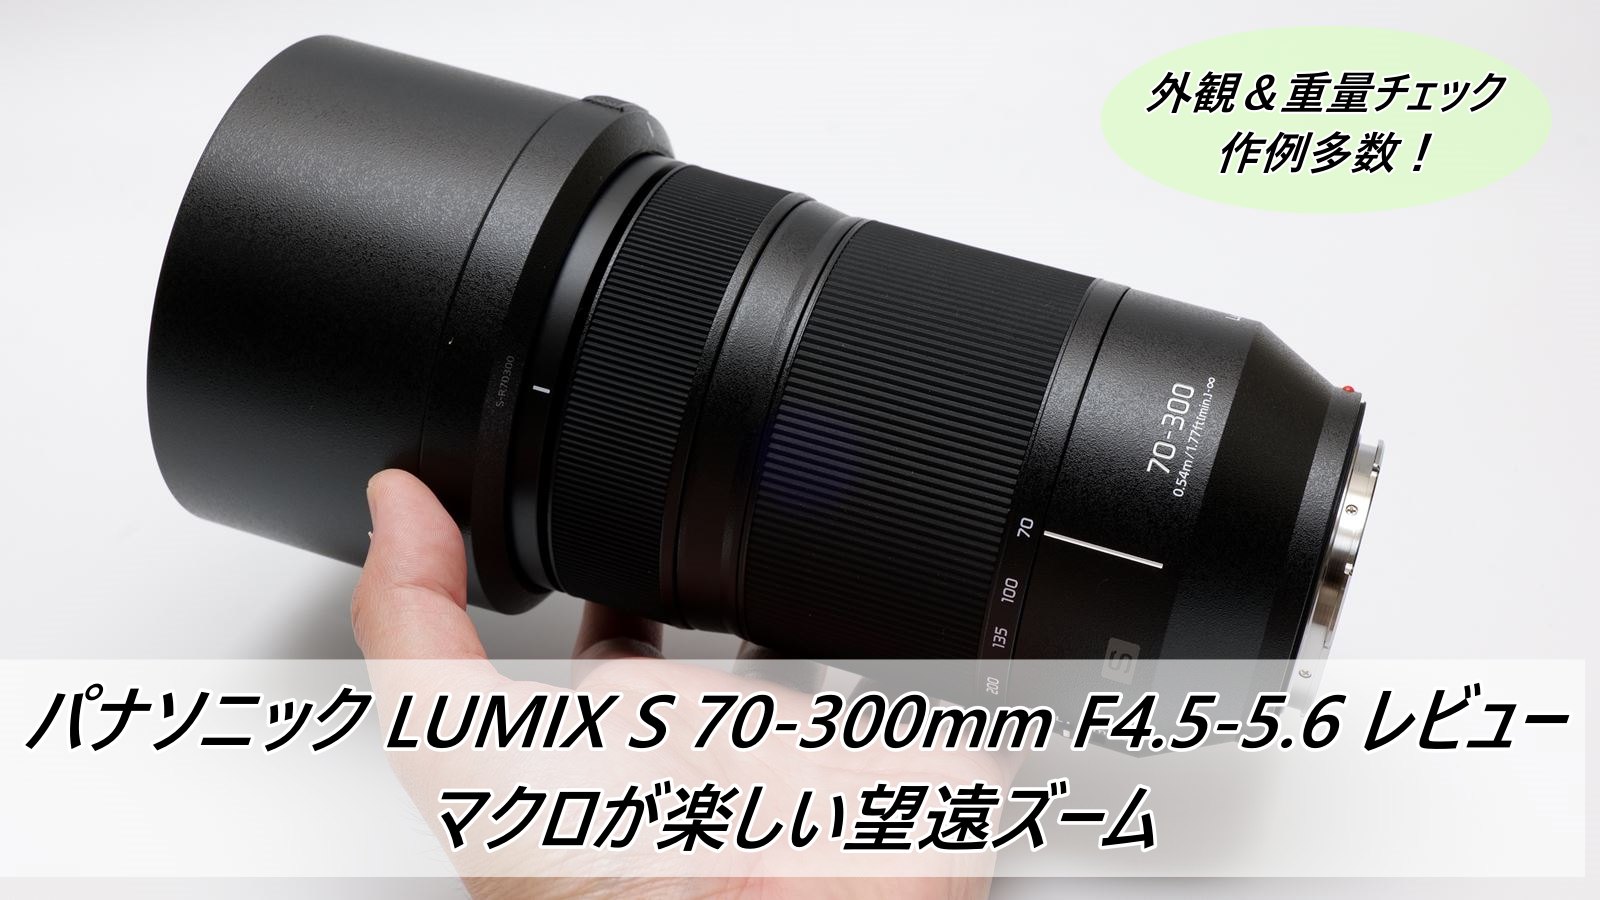 内祝い LUMIX S 70-300mm F4.5-5.6 MACRO